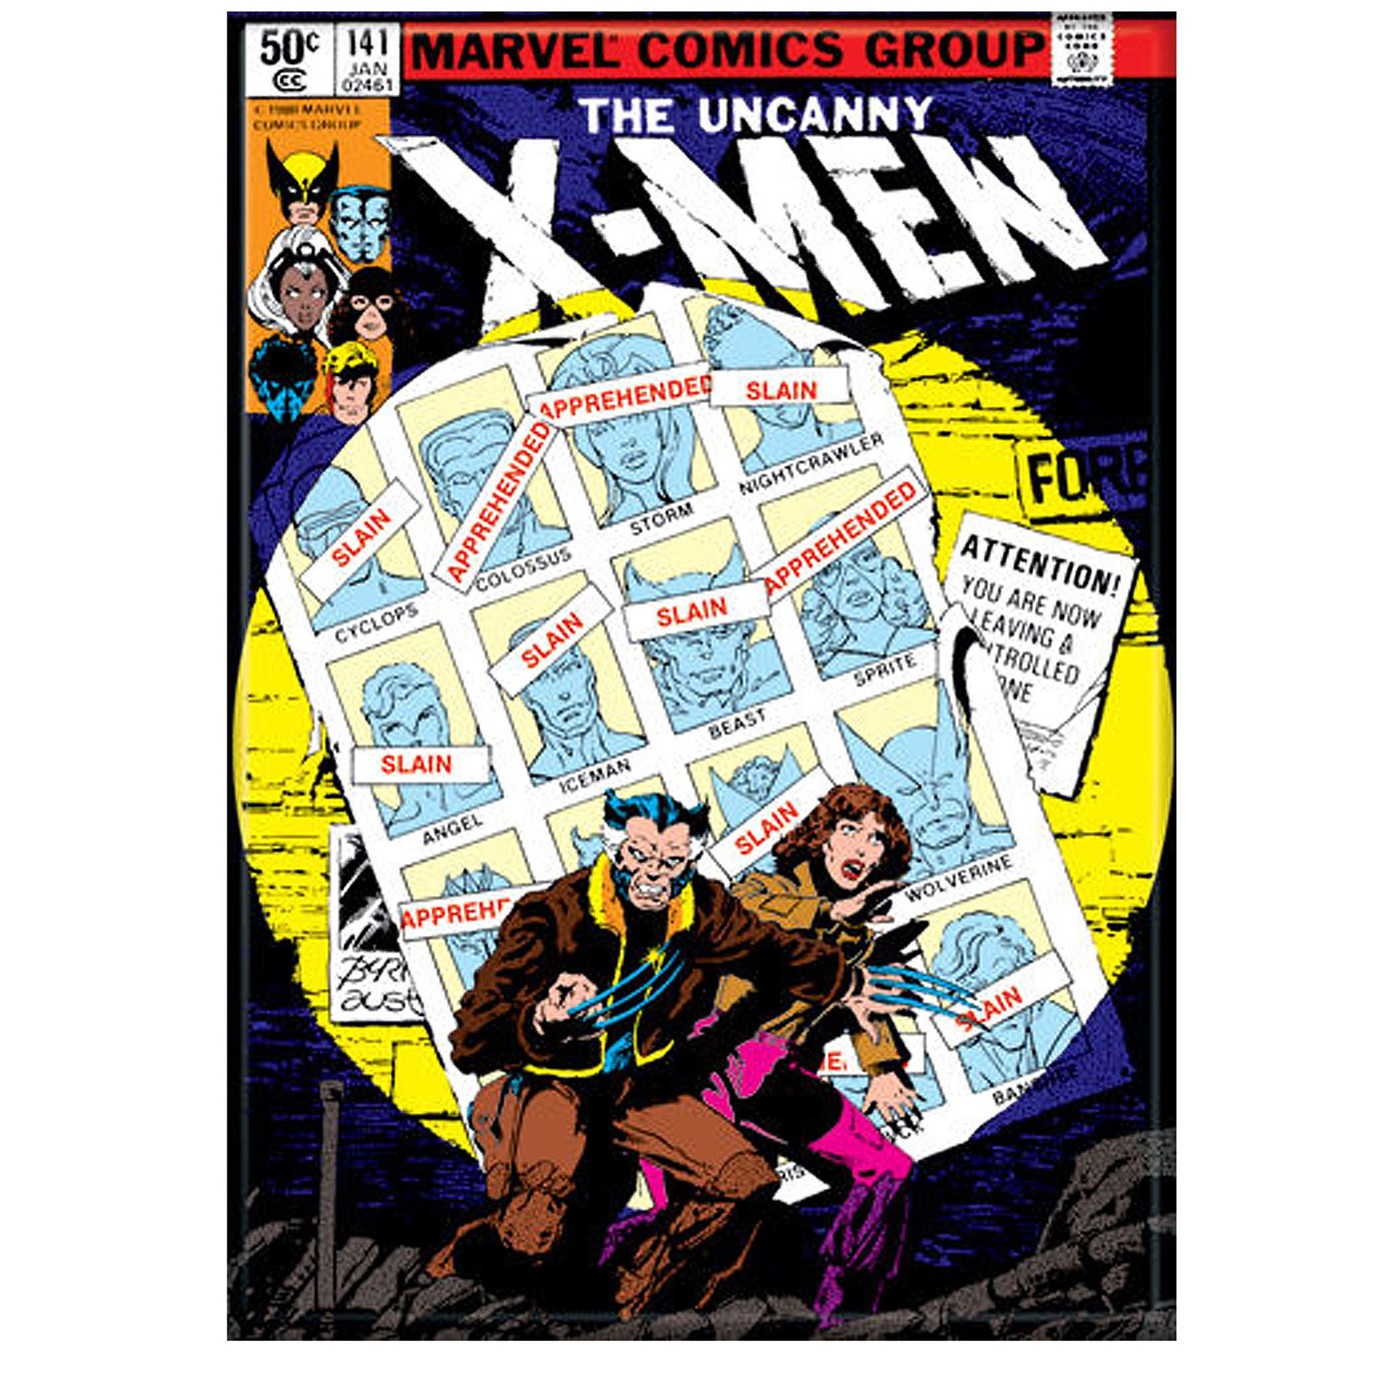 Uncanny X-Men #141 Cover Magnet